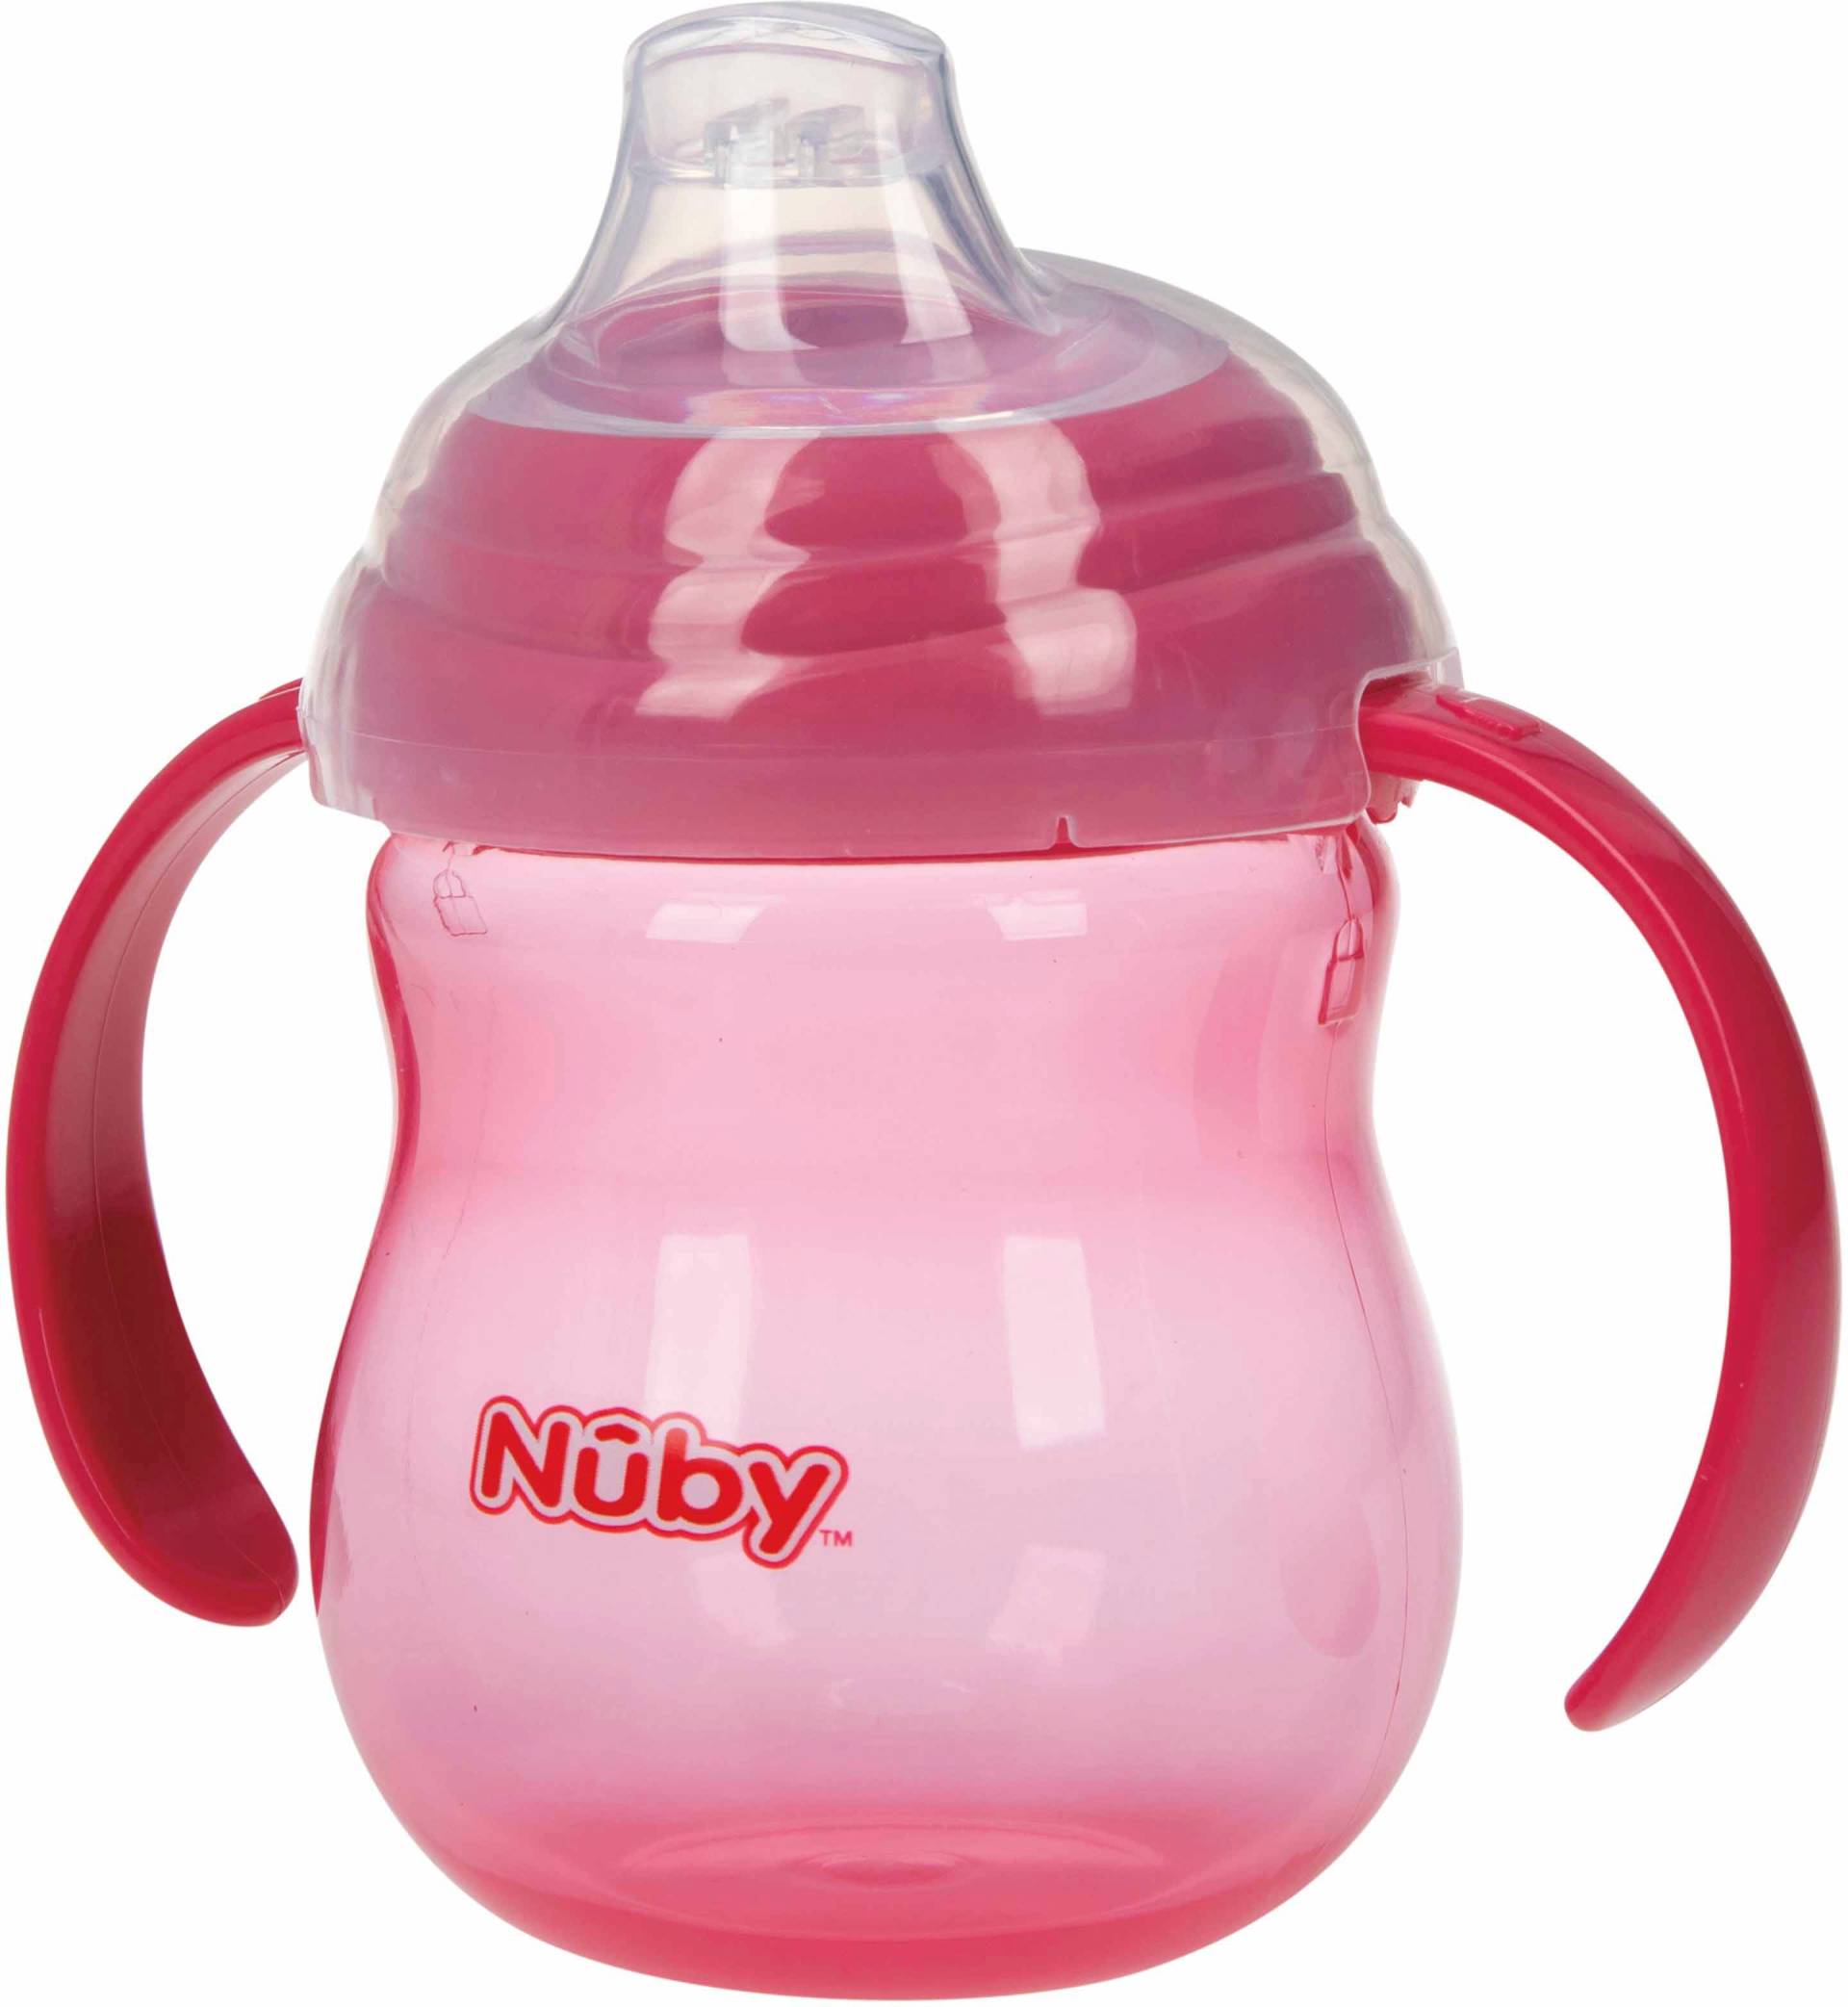 Nuby Trinklernbecher »270ml, pink« von Nuby